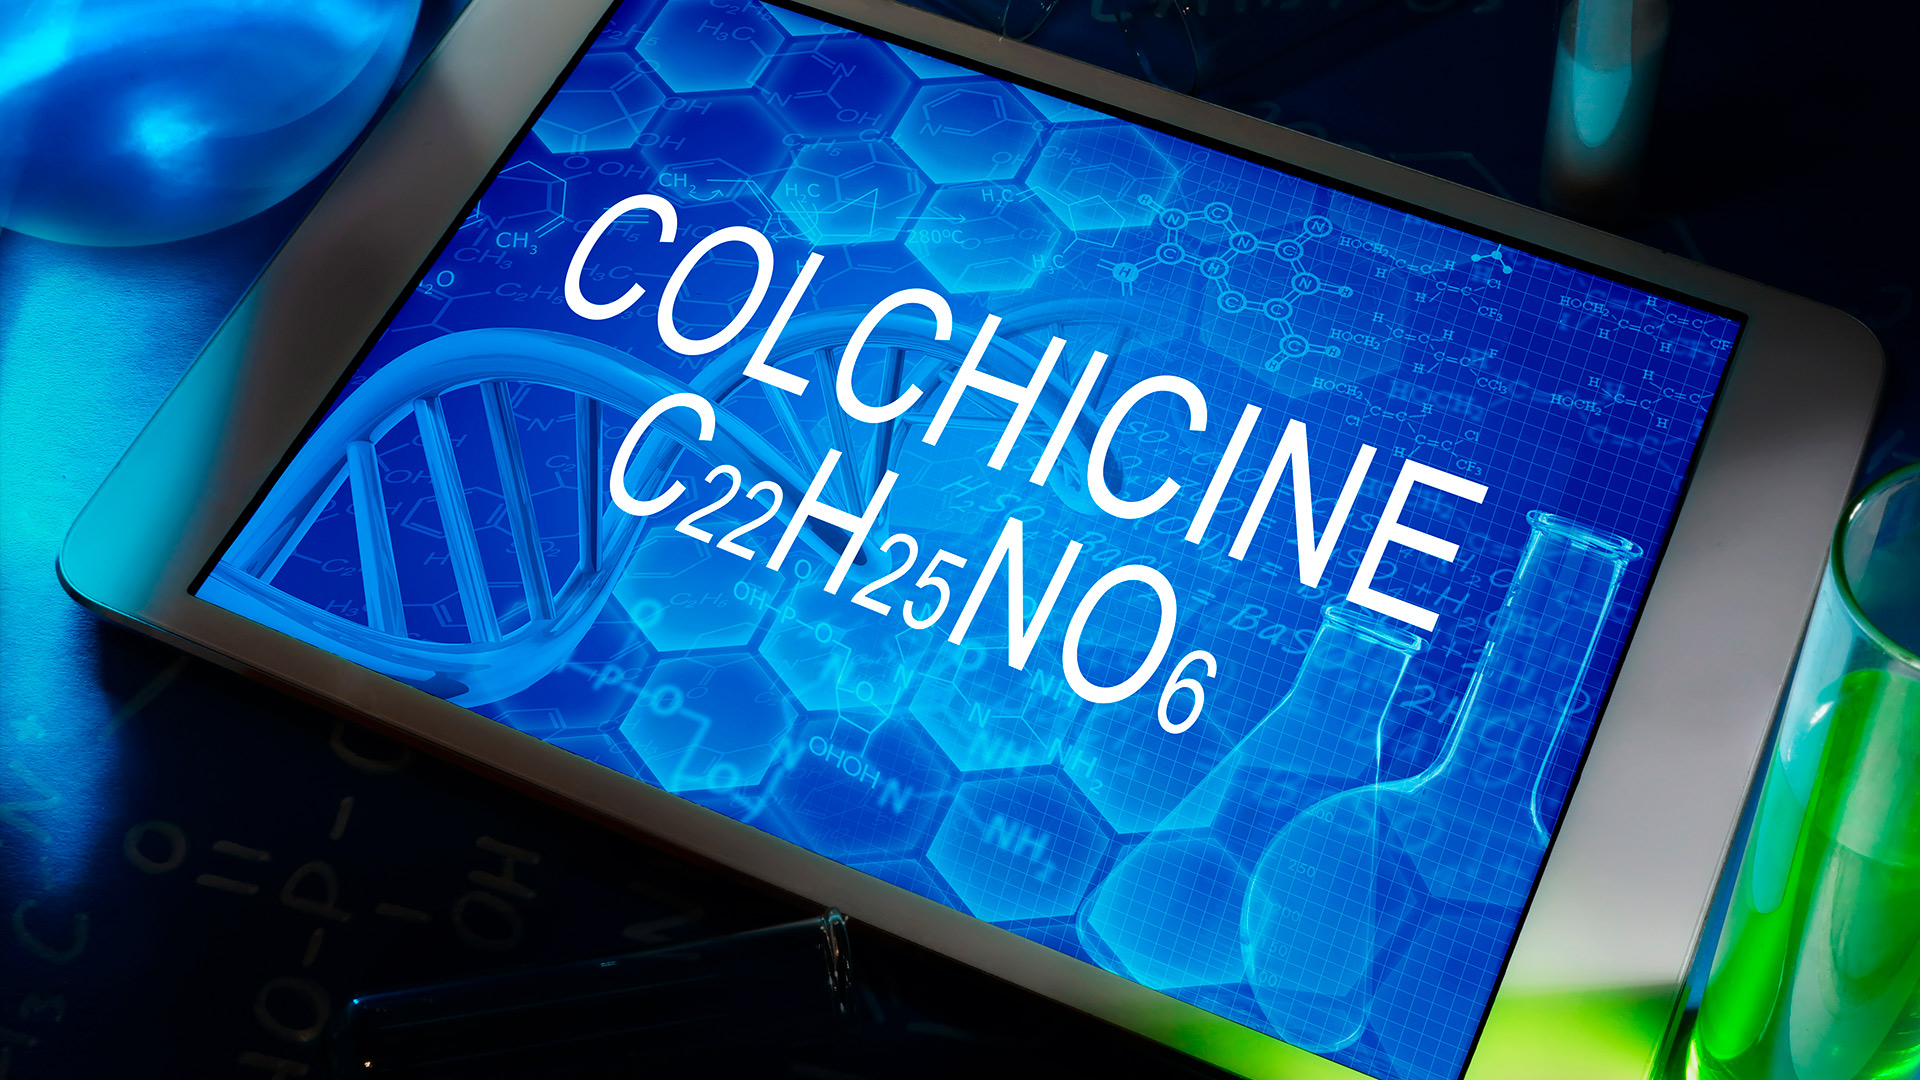 El fármaco colchicina mostró reducir el riesgo de complicaciones por COVID-19 según un importante ensayo clínico canadiense (Shutterstock)